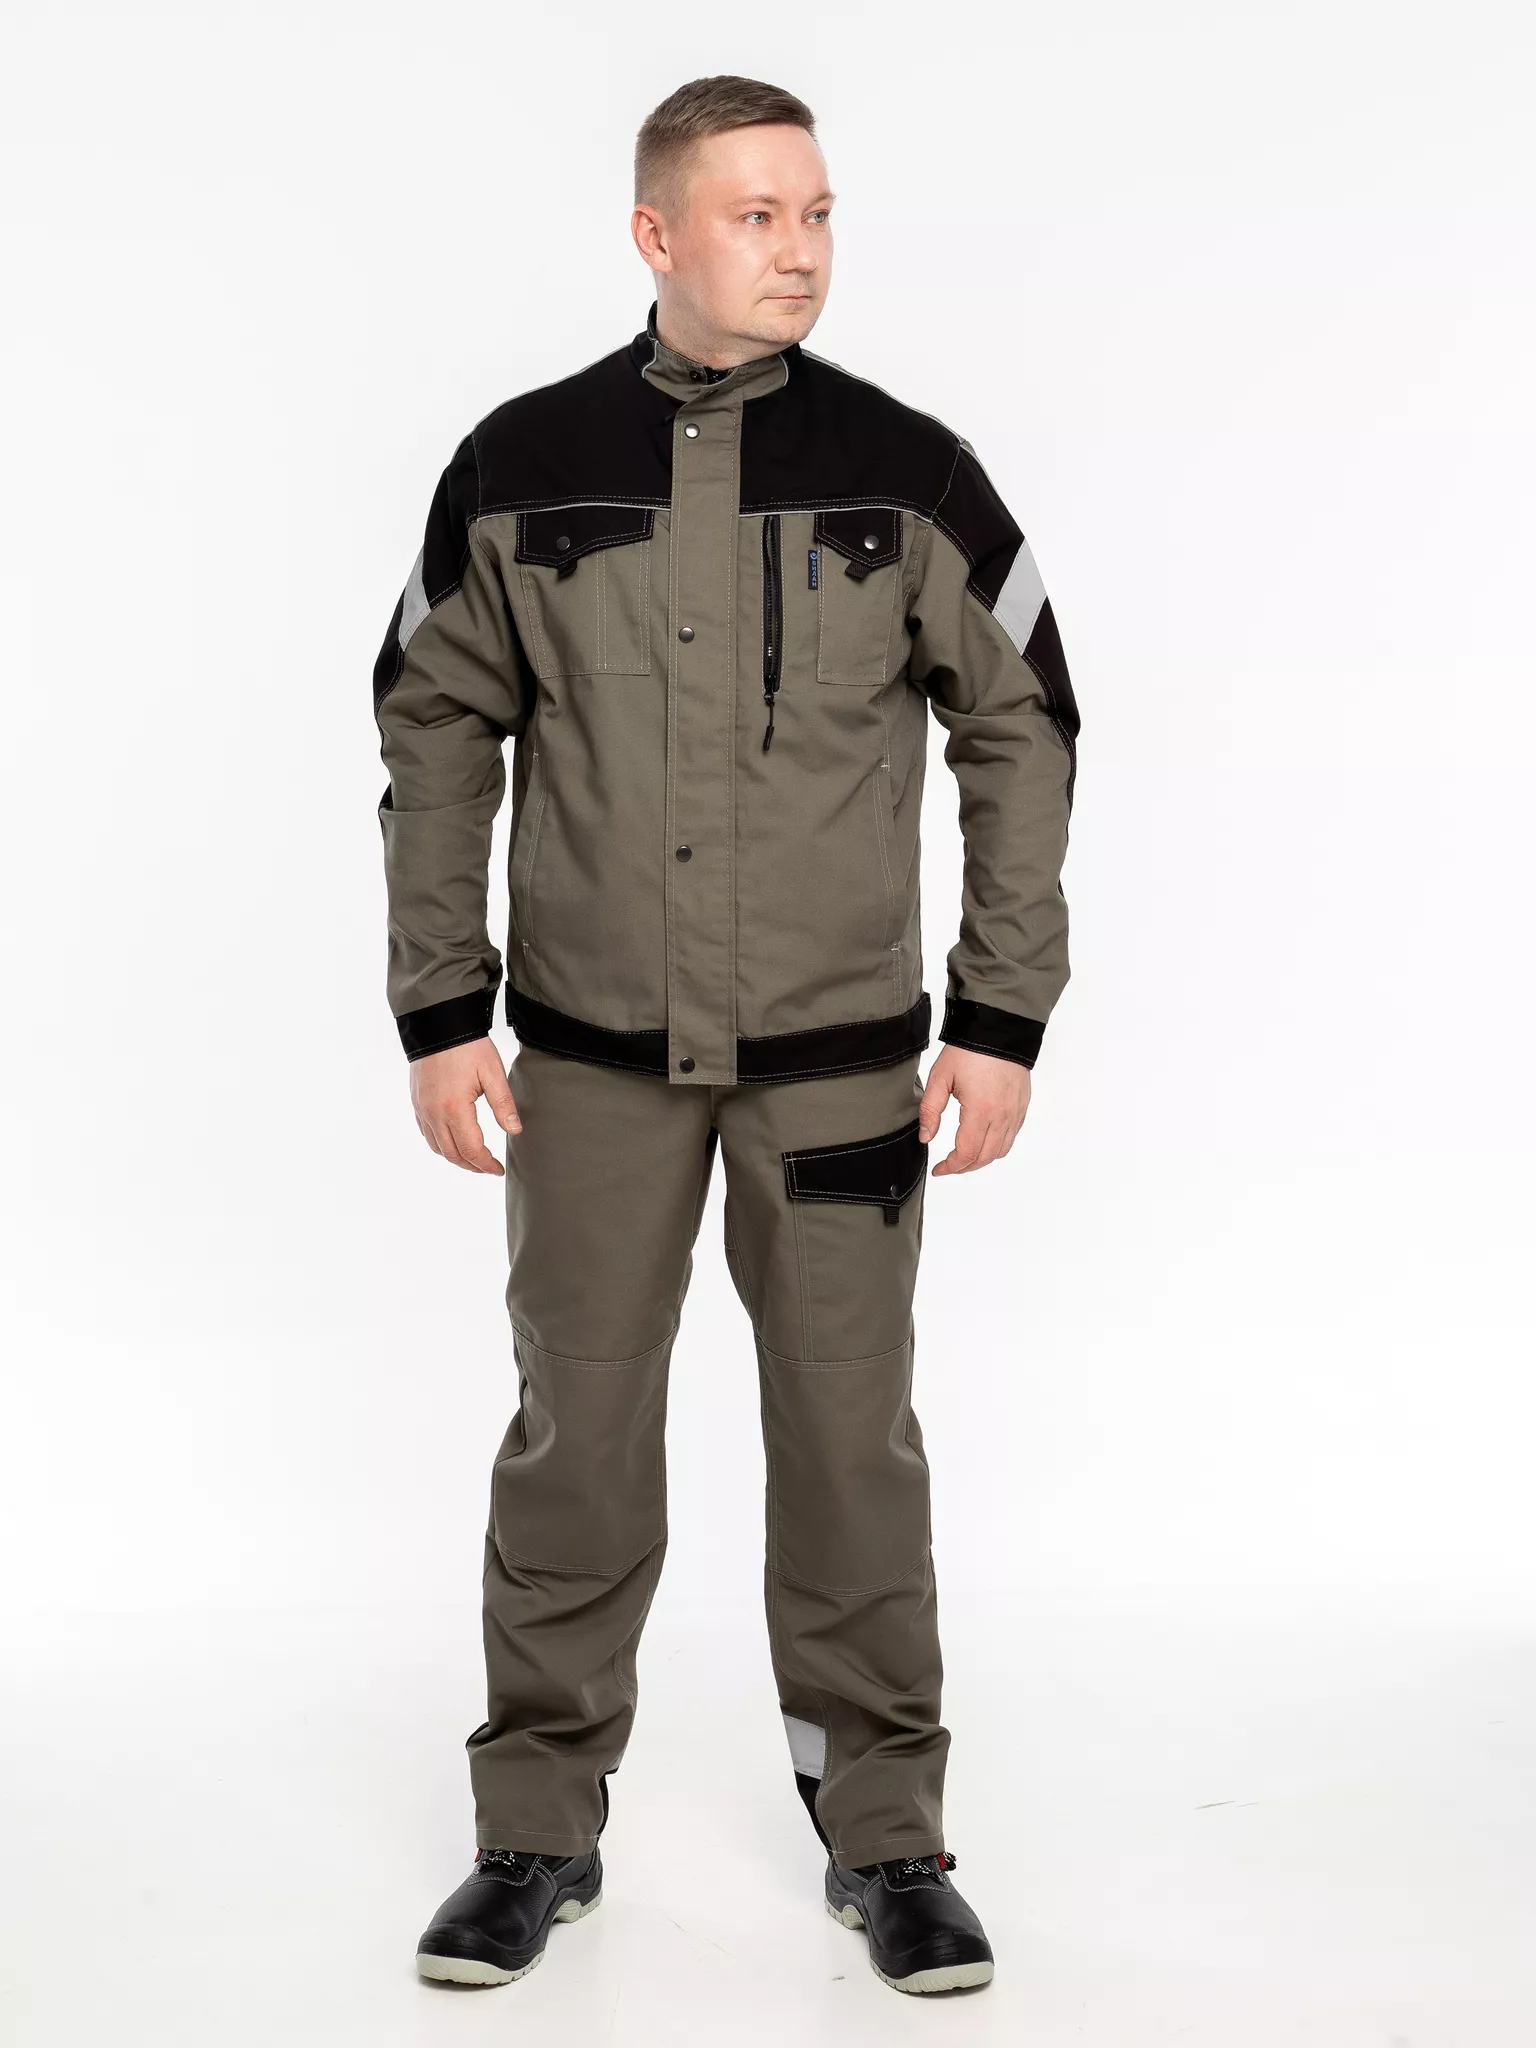 Куртка рабочая КР.366 р.56-58, рост 182-188 (цвет оливковый, отделка черная.СОП)